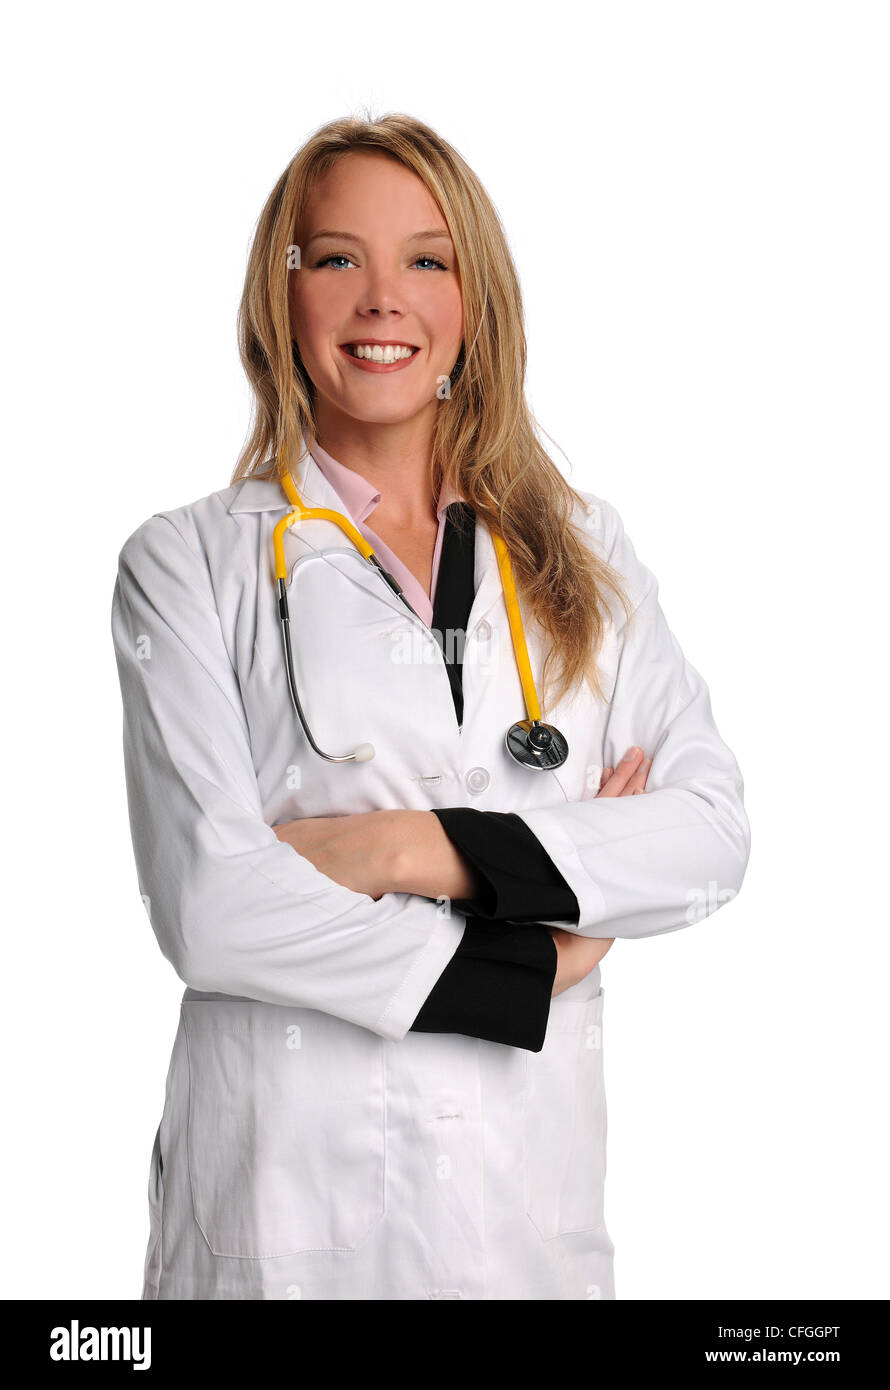 Ritratto di bellissima femmina medico o infermiere sorridente isolate su sfondo bianco Foto Stock